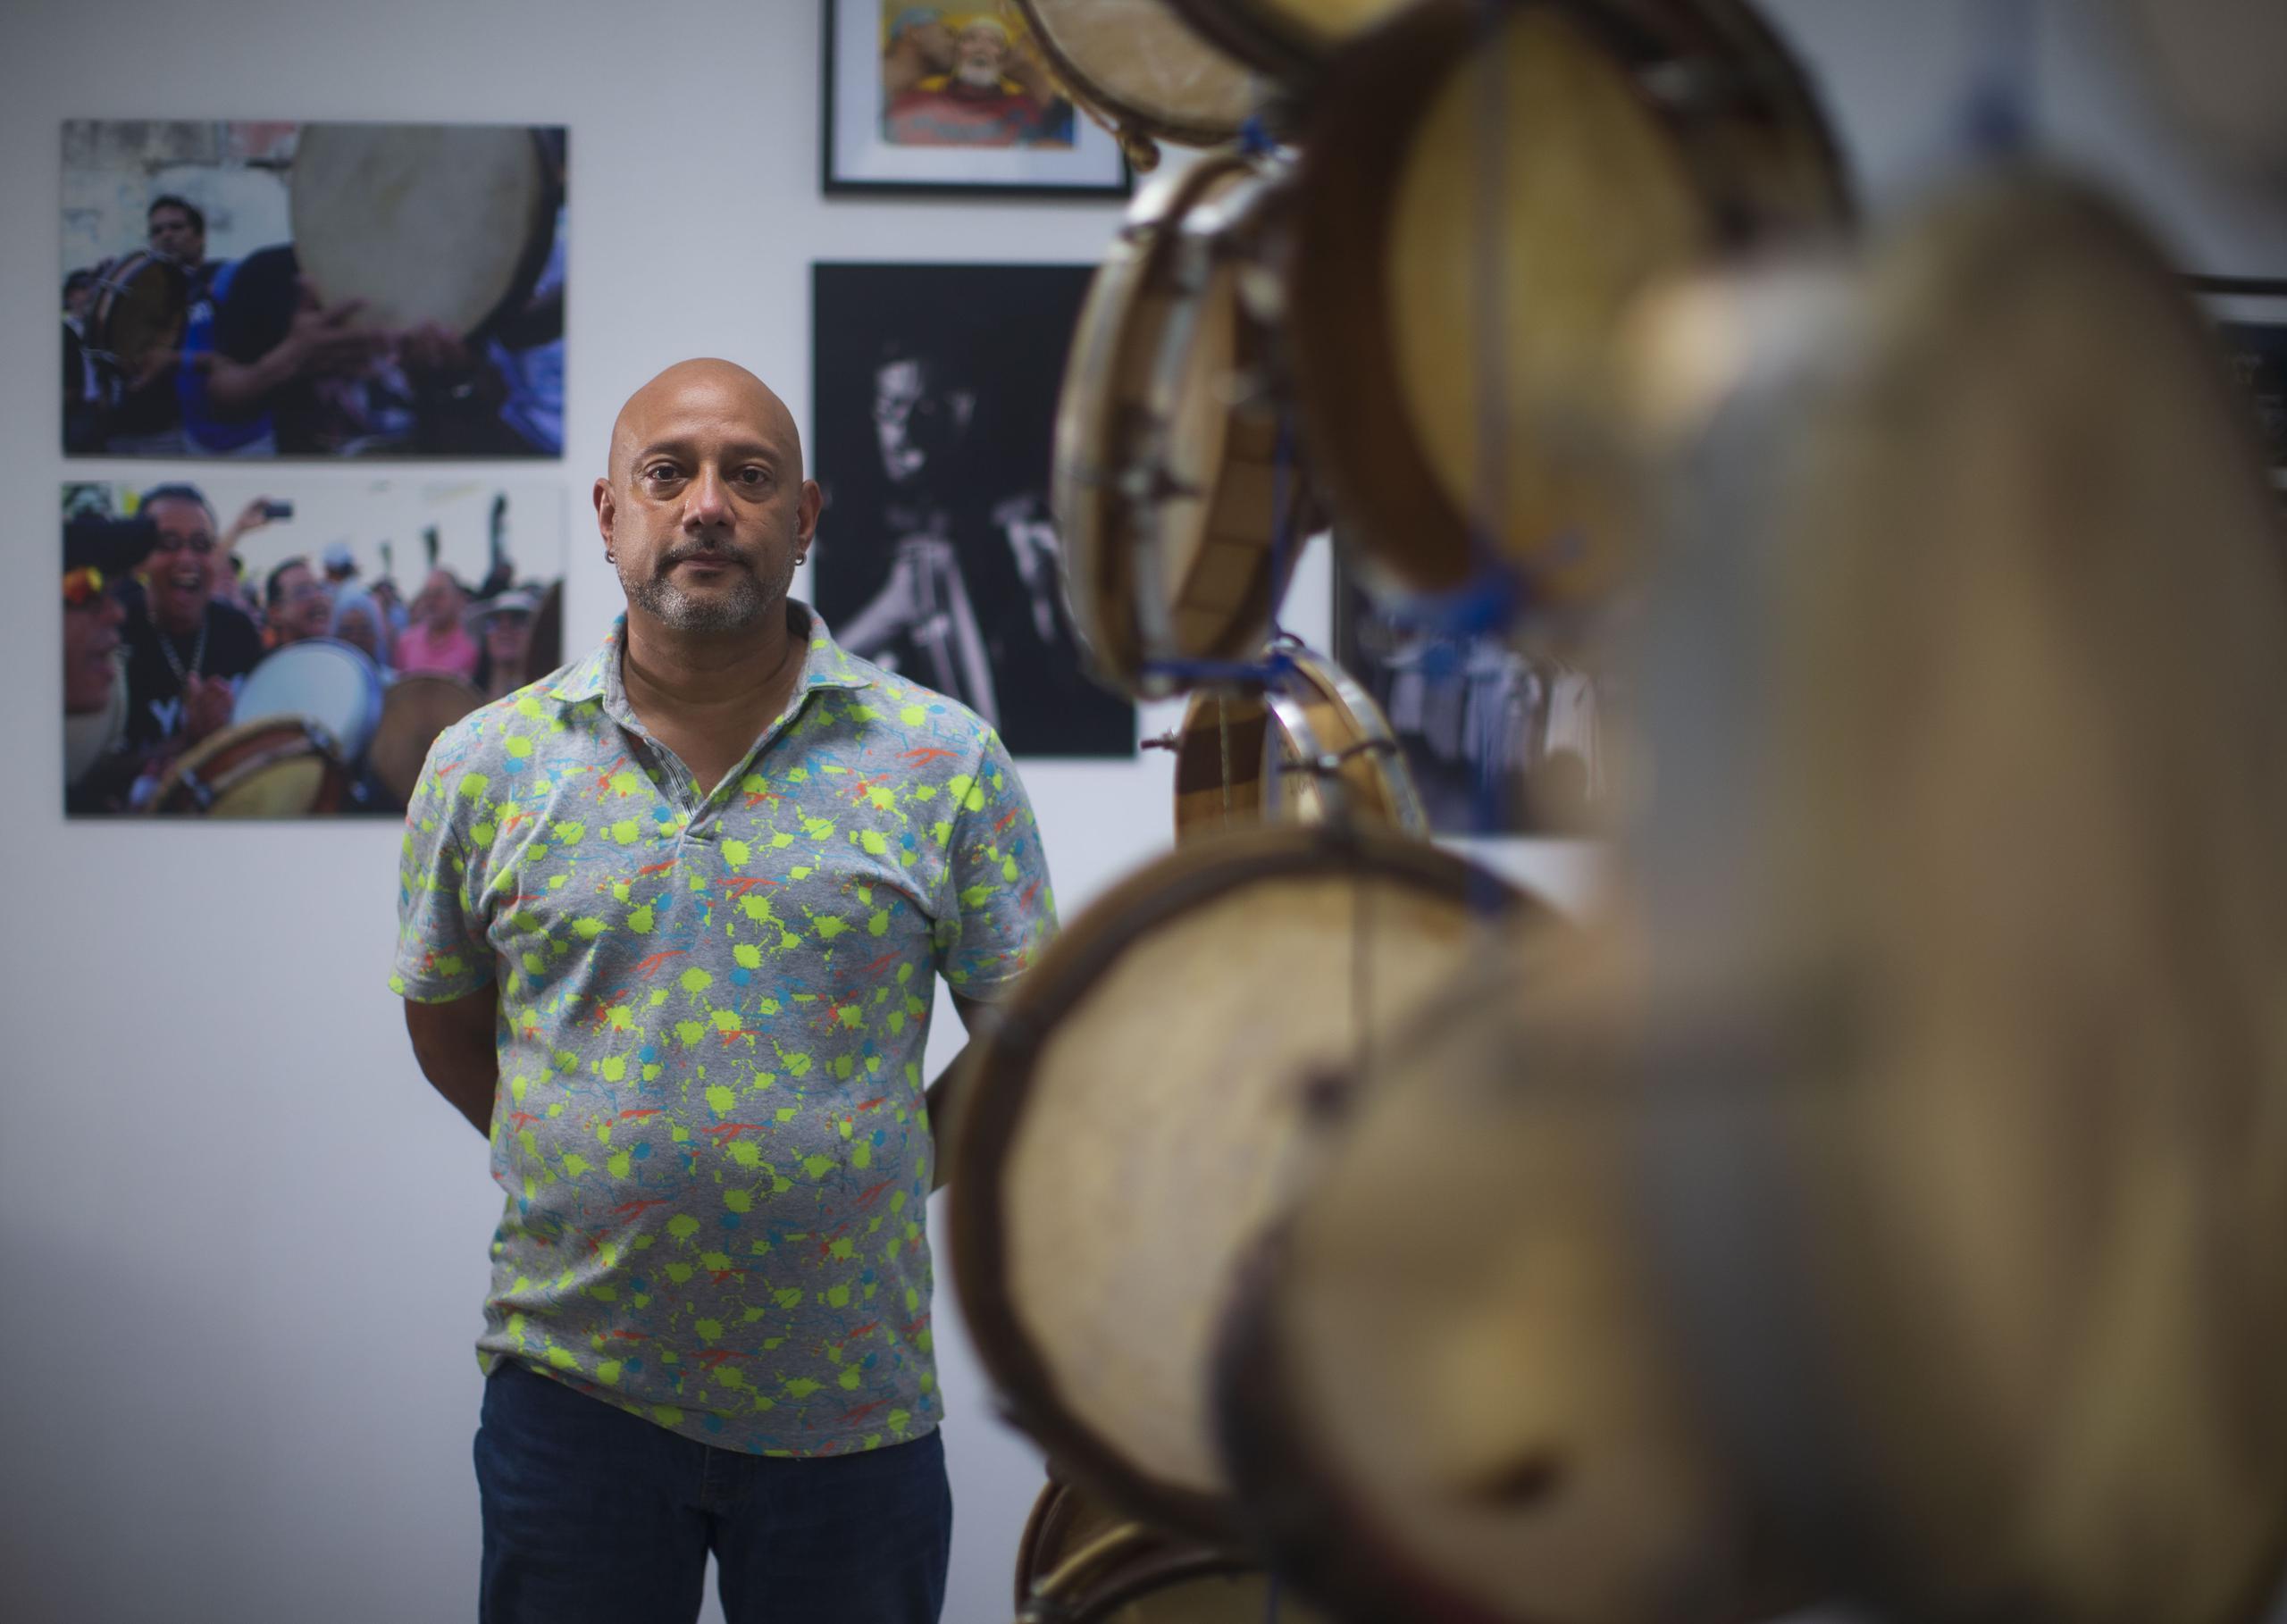 Matos se especializó y fomentó dos ritmos tradicionales puertorriqueños: la bomba y la plena.